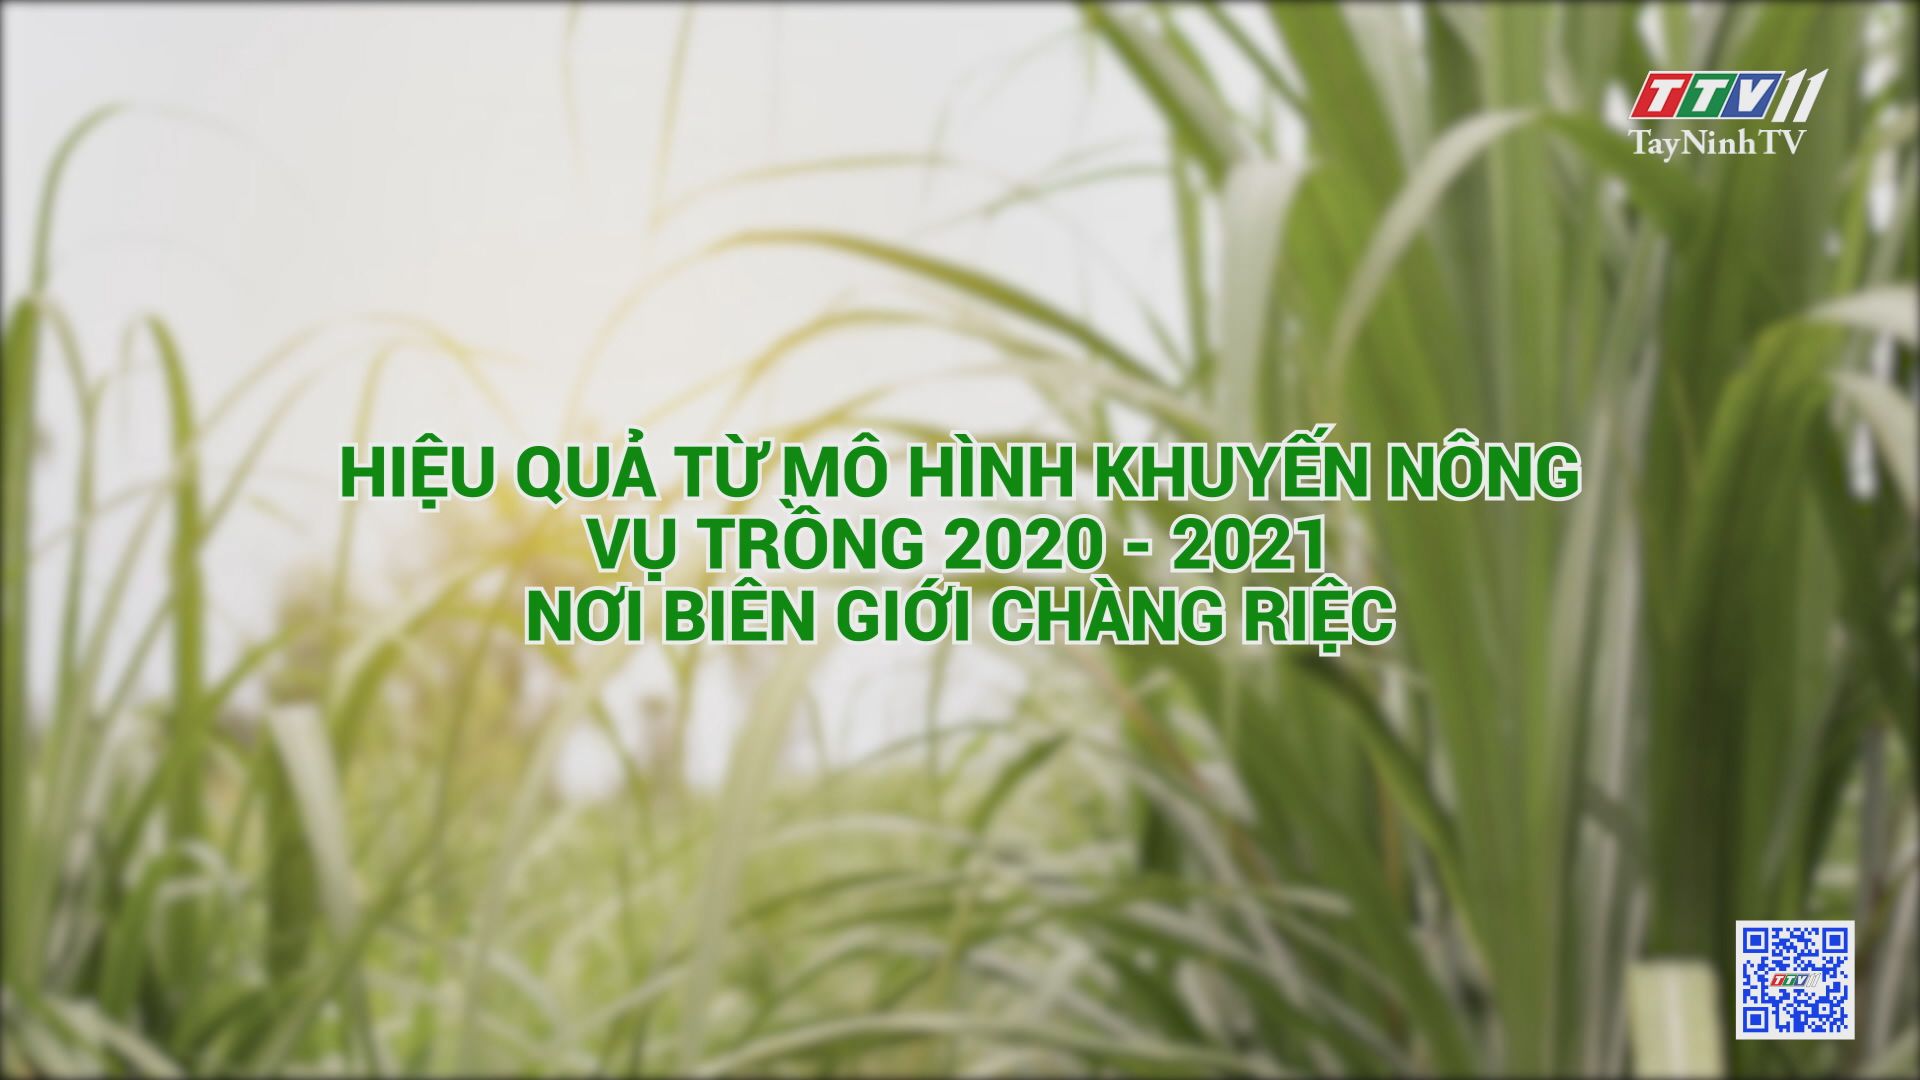 Hiệu quả từ mô hình khuyến nông vụ trồng 2020-2021 nơi biên giới Chàng Riệc | CÂY MÍA VIỆT | TayNinhTV